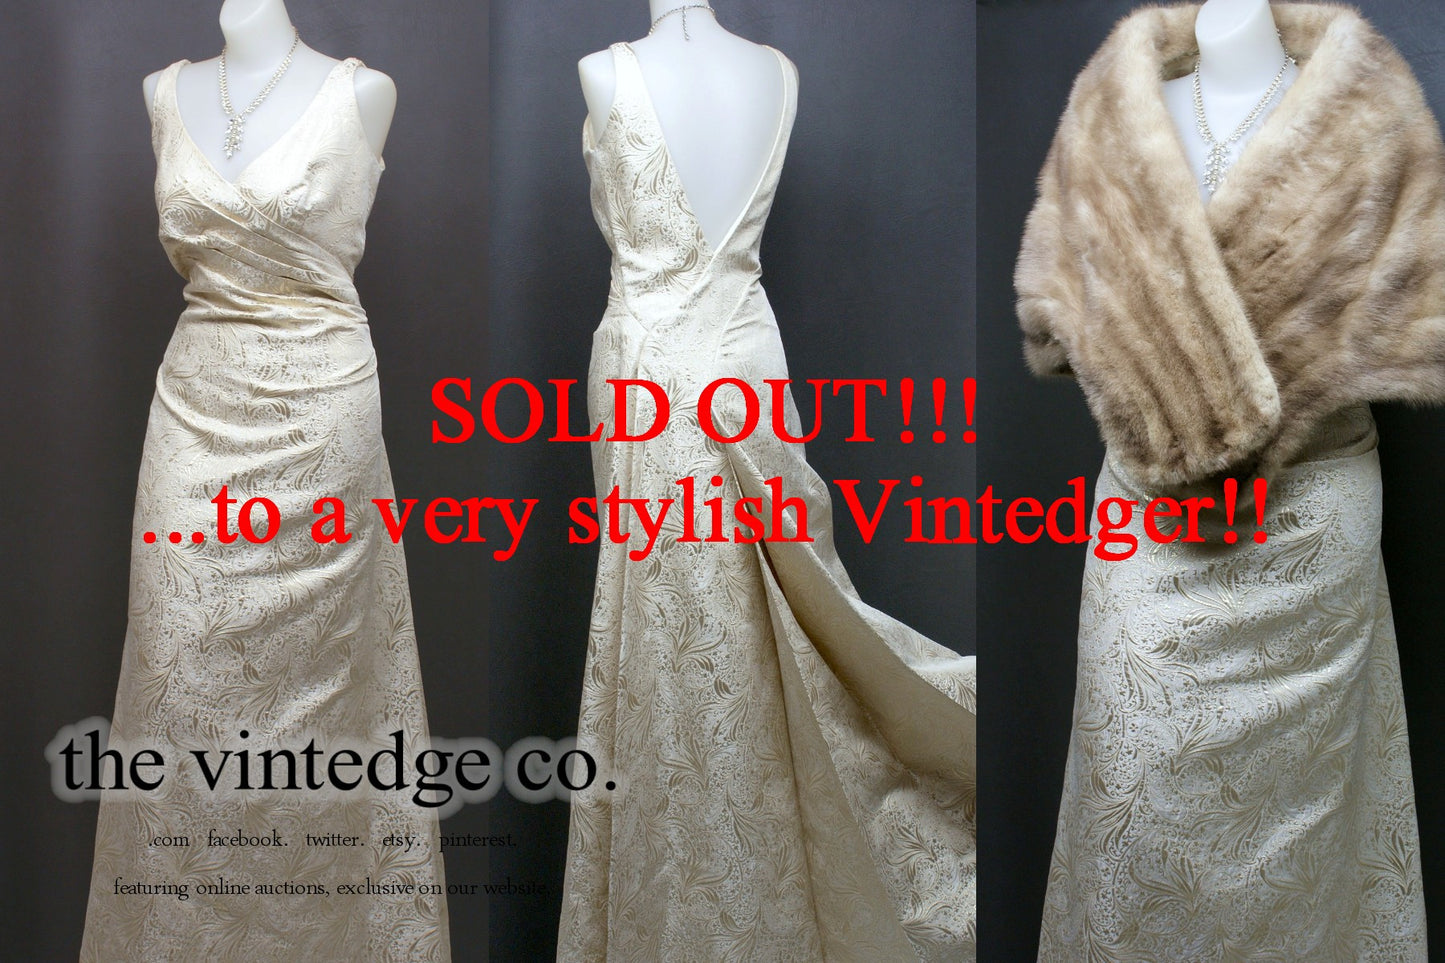 SOLD - Vintage Wedding Bridal Dress The Vintedge Co.